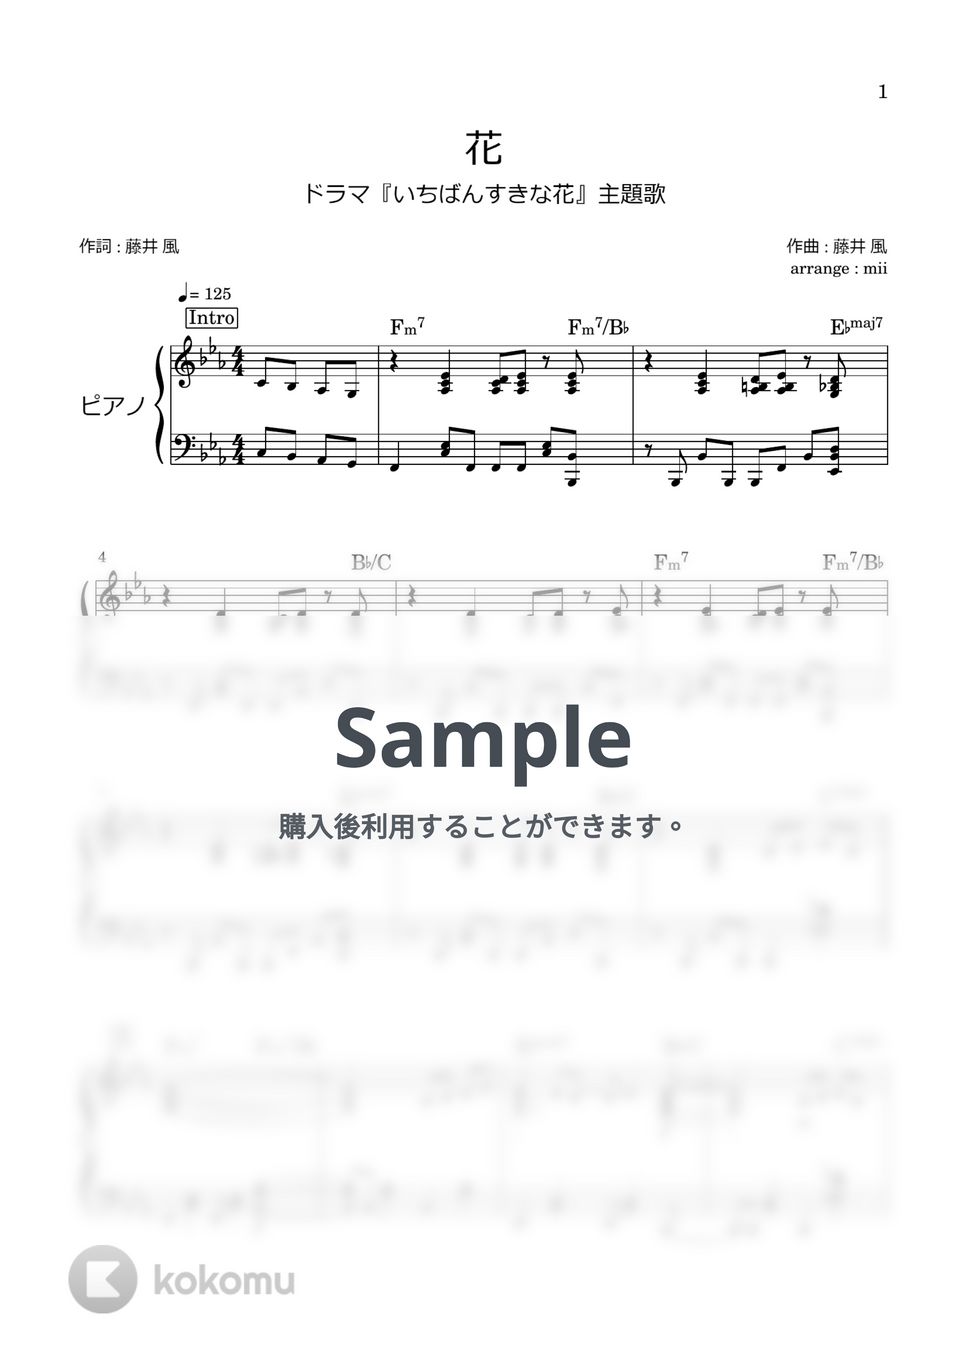 藤井風 - 花 (いちばんすきな花 主題歌) by miiの楽譜棚